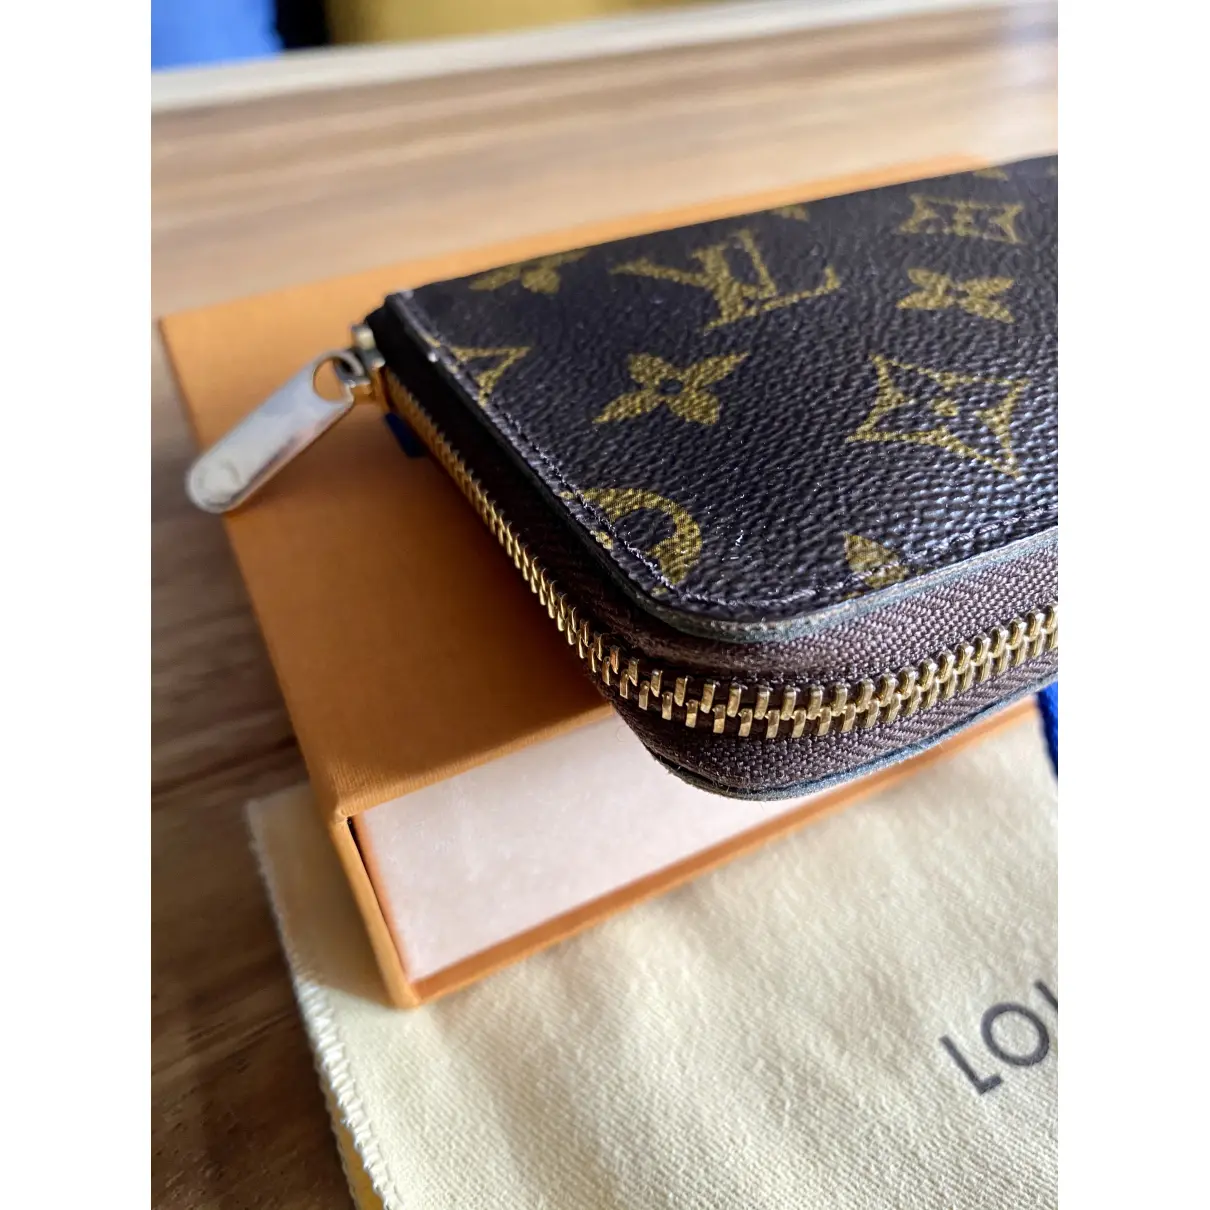 Zippy cloth purse Louis Vuitton